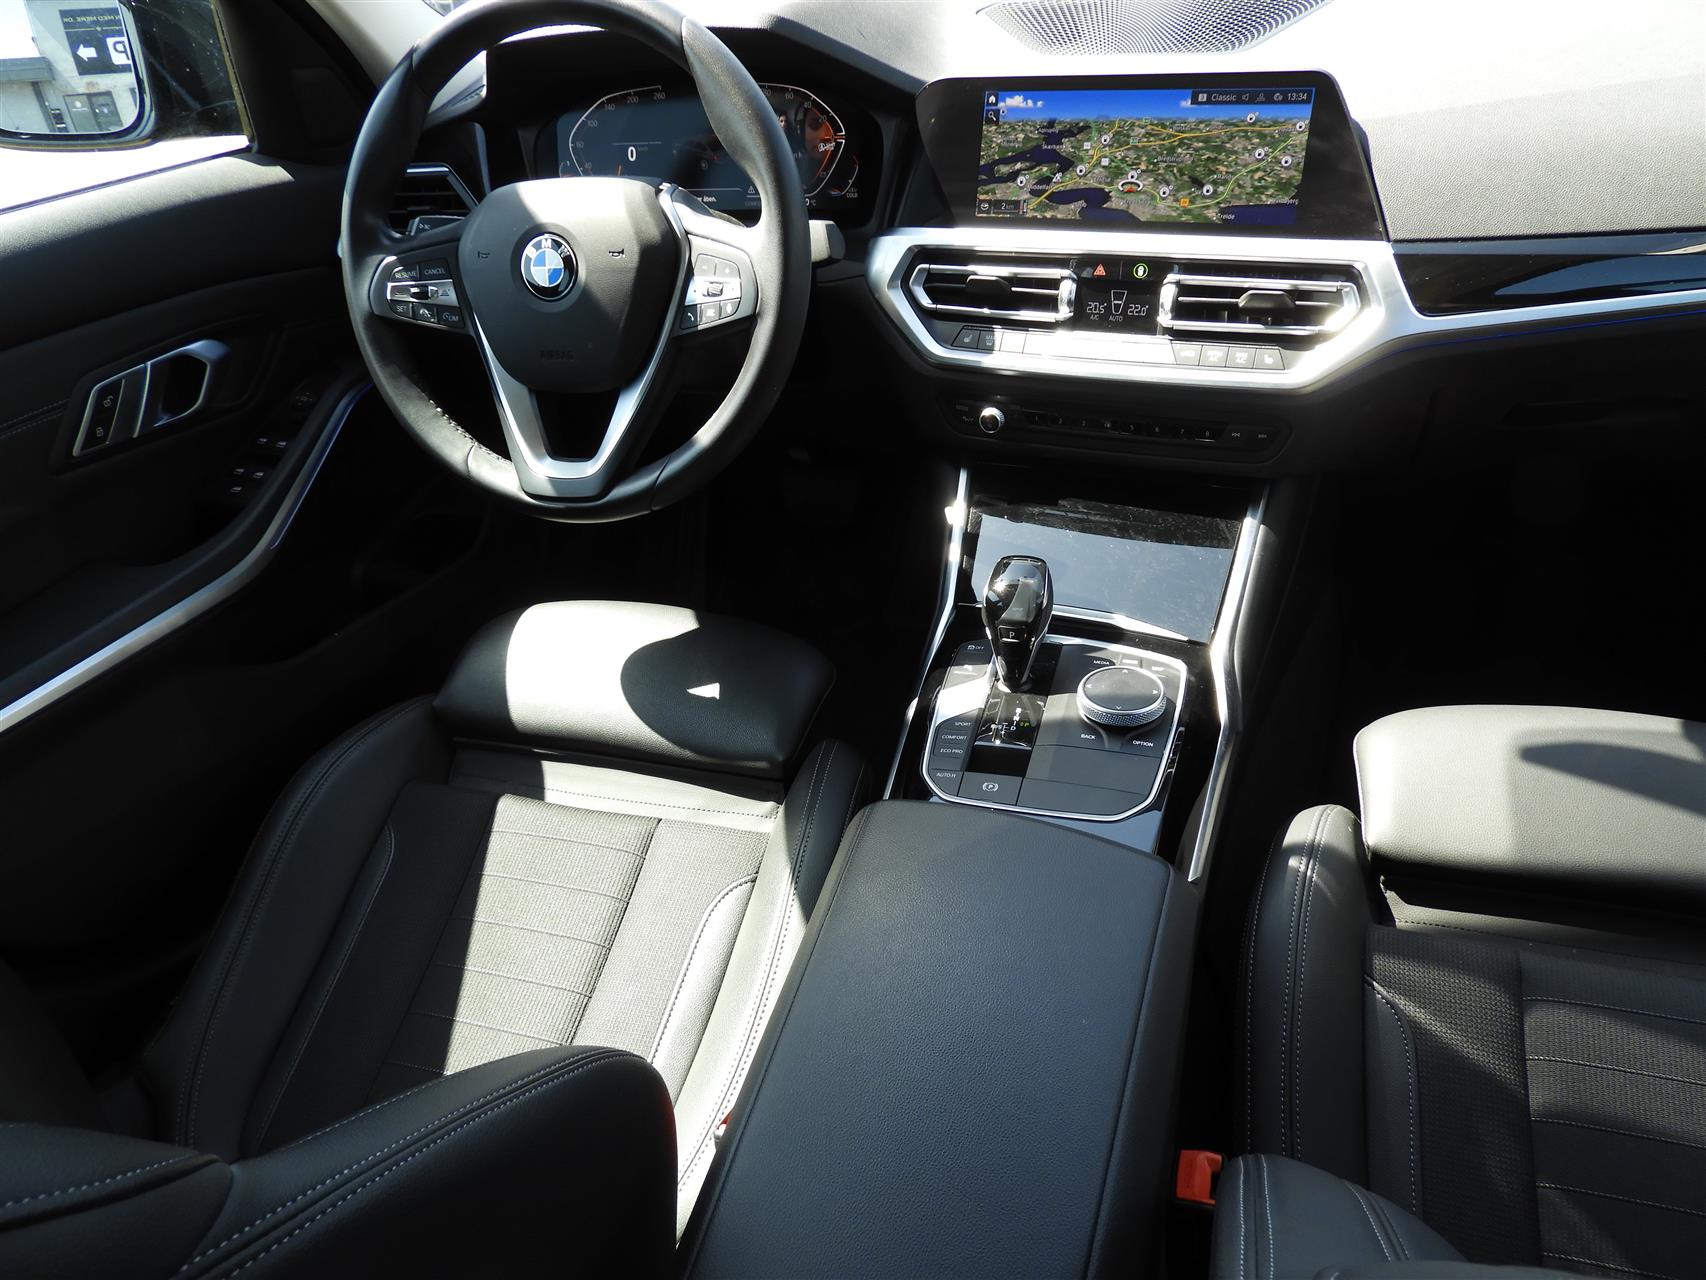 Billede af BMW 320d 2,0 Mild hybrid Sportline 201HK 8g Aut.